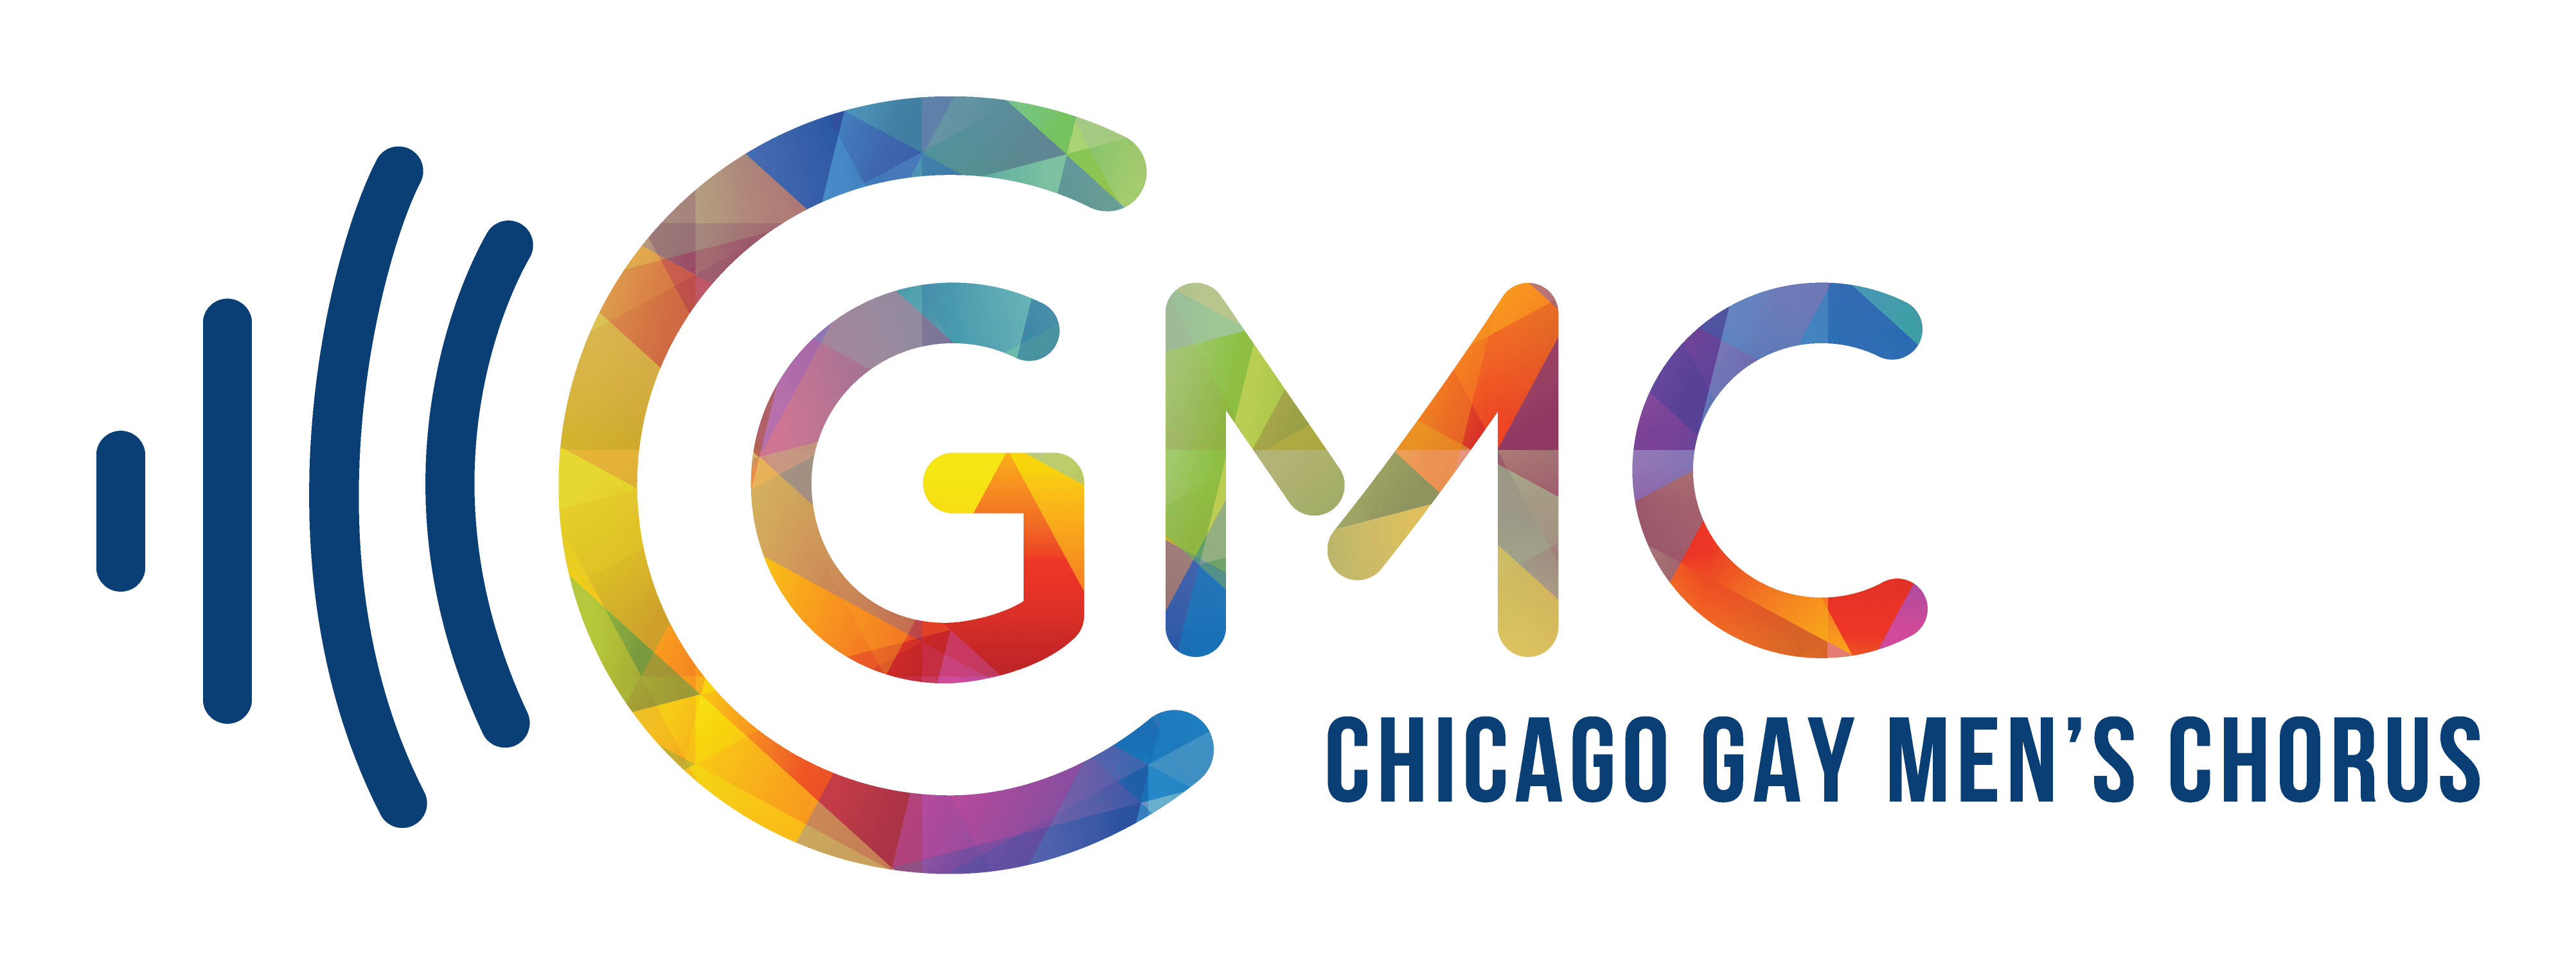 Chorus Logo - Chicago Gay Men's Chorus Chicago Gay Men's Chorus